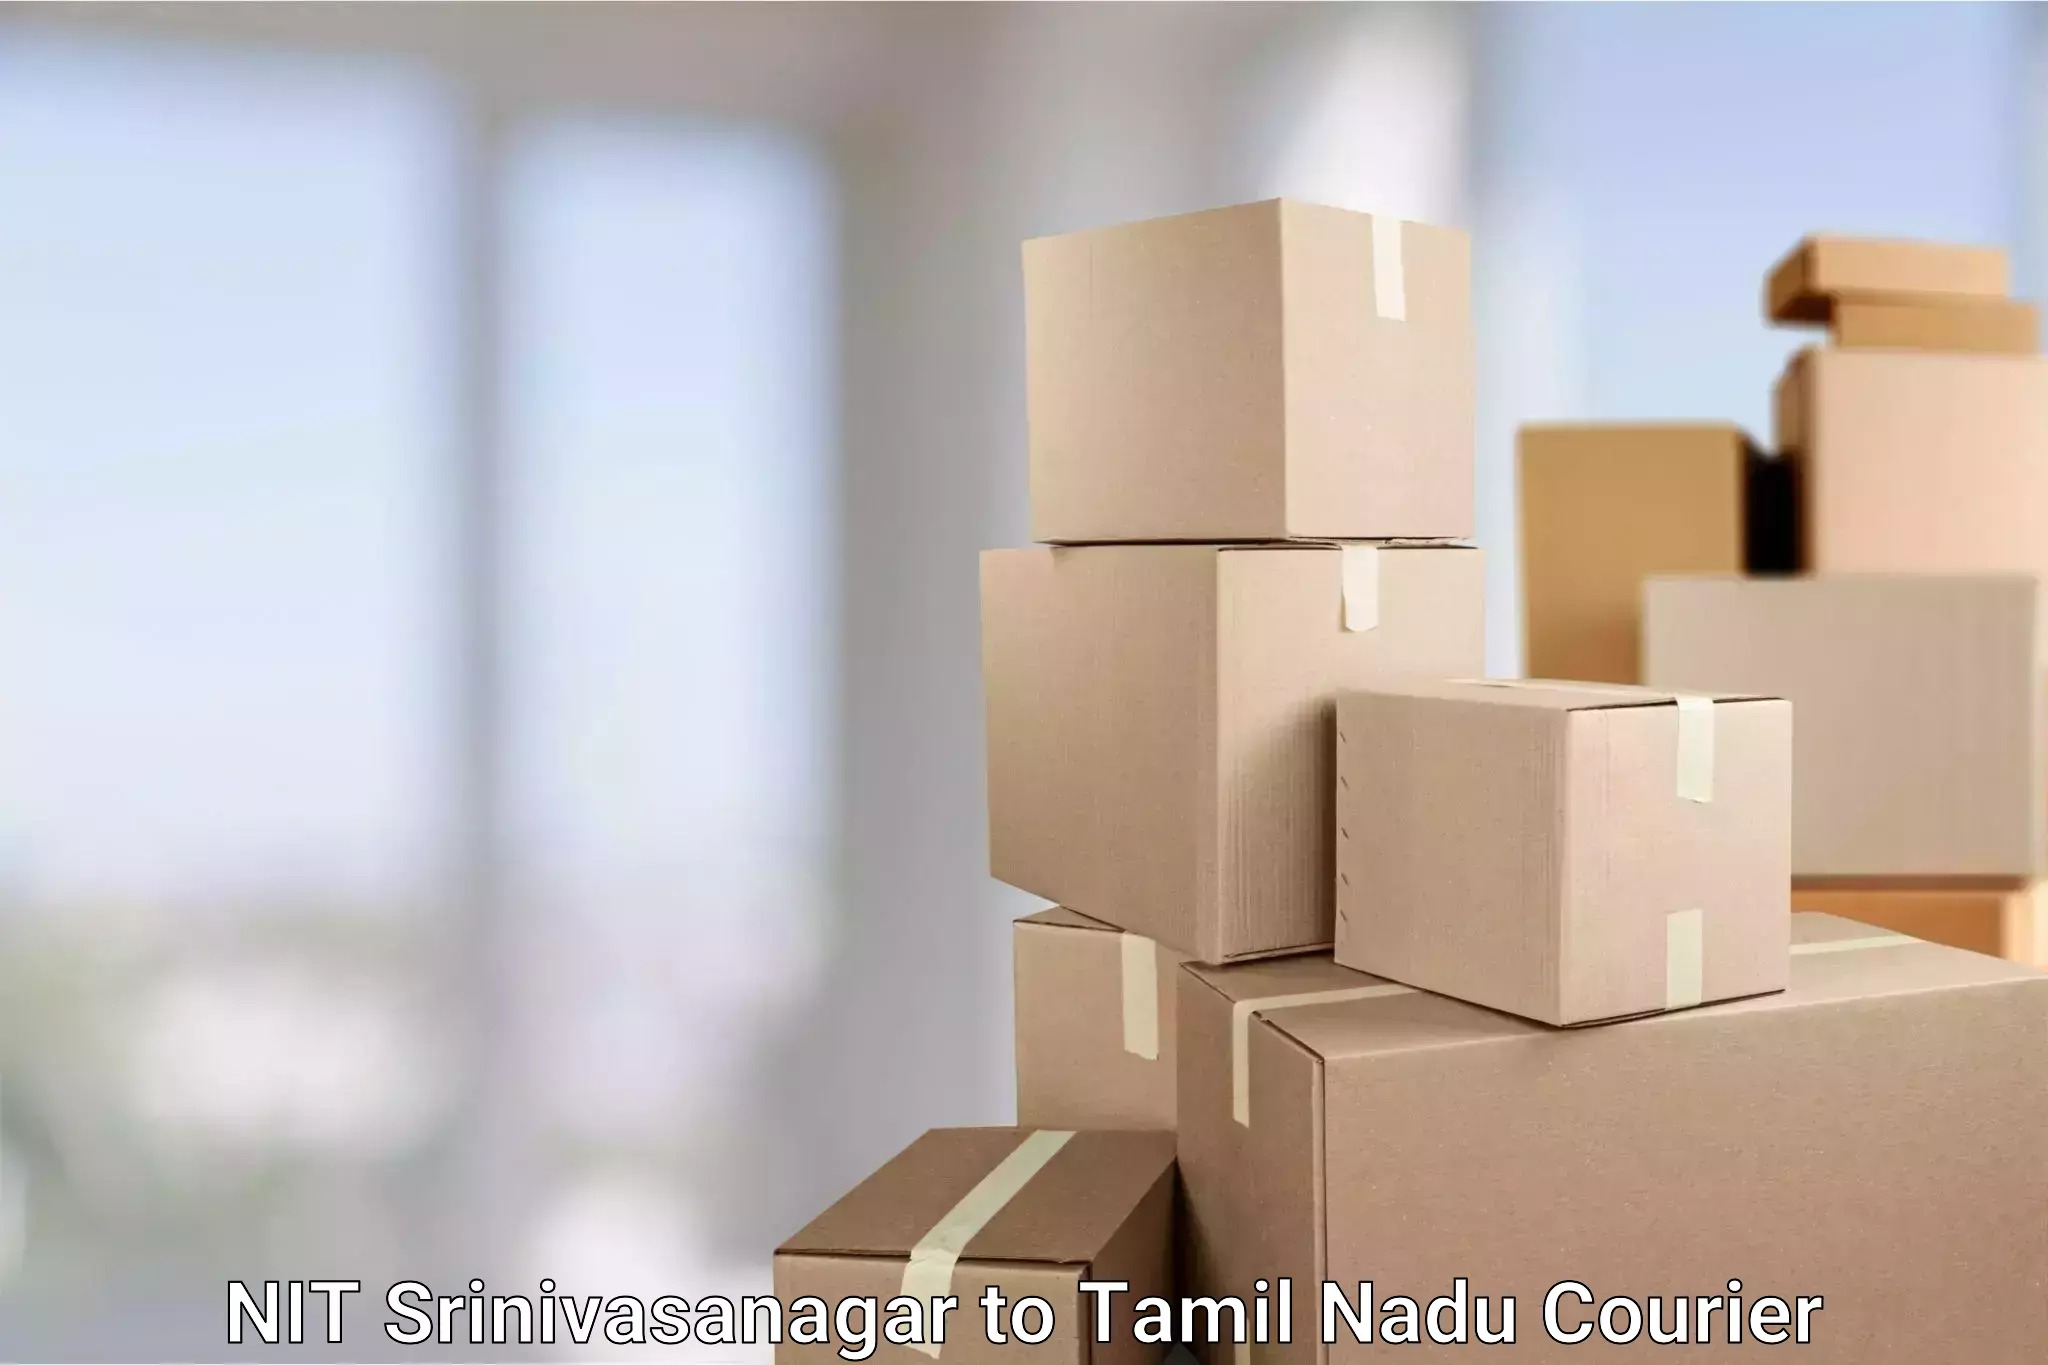 Express delivery solutions NIT Srinivasanagar to Tamil Nadu